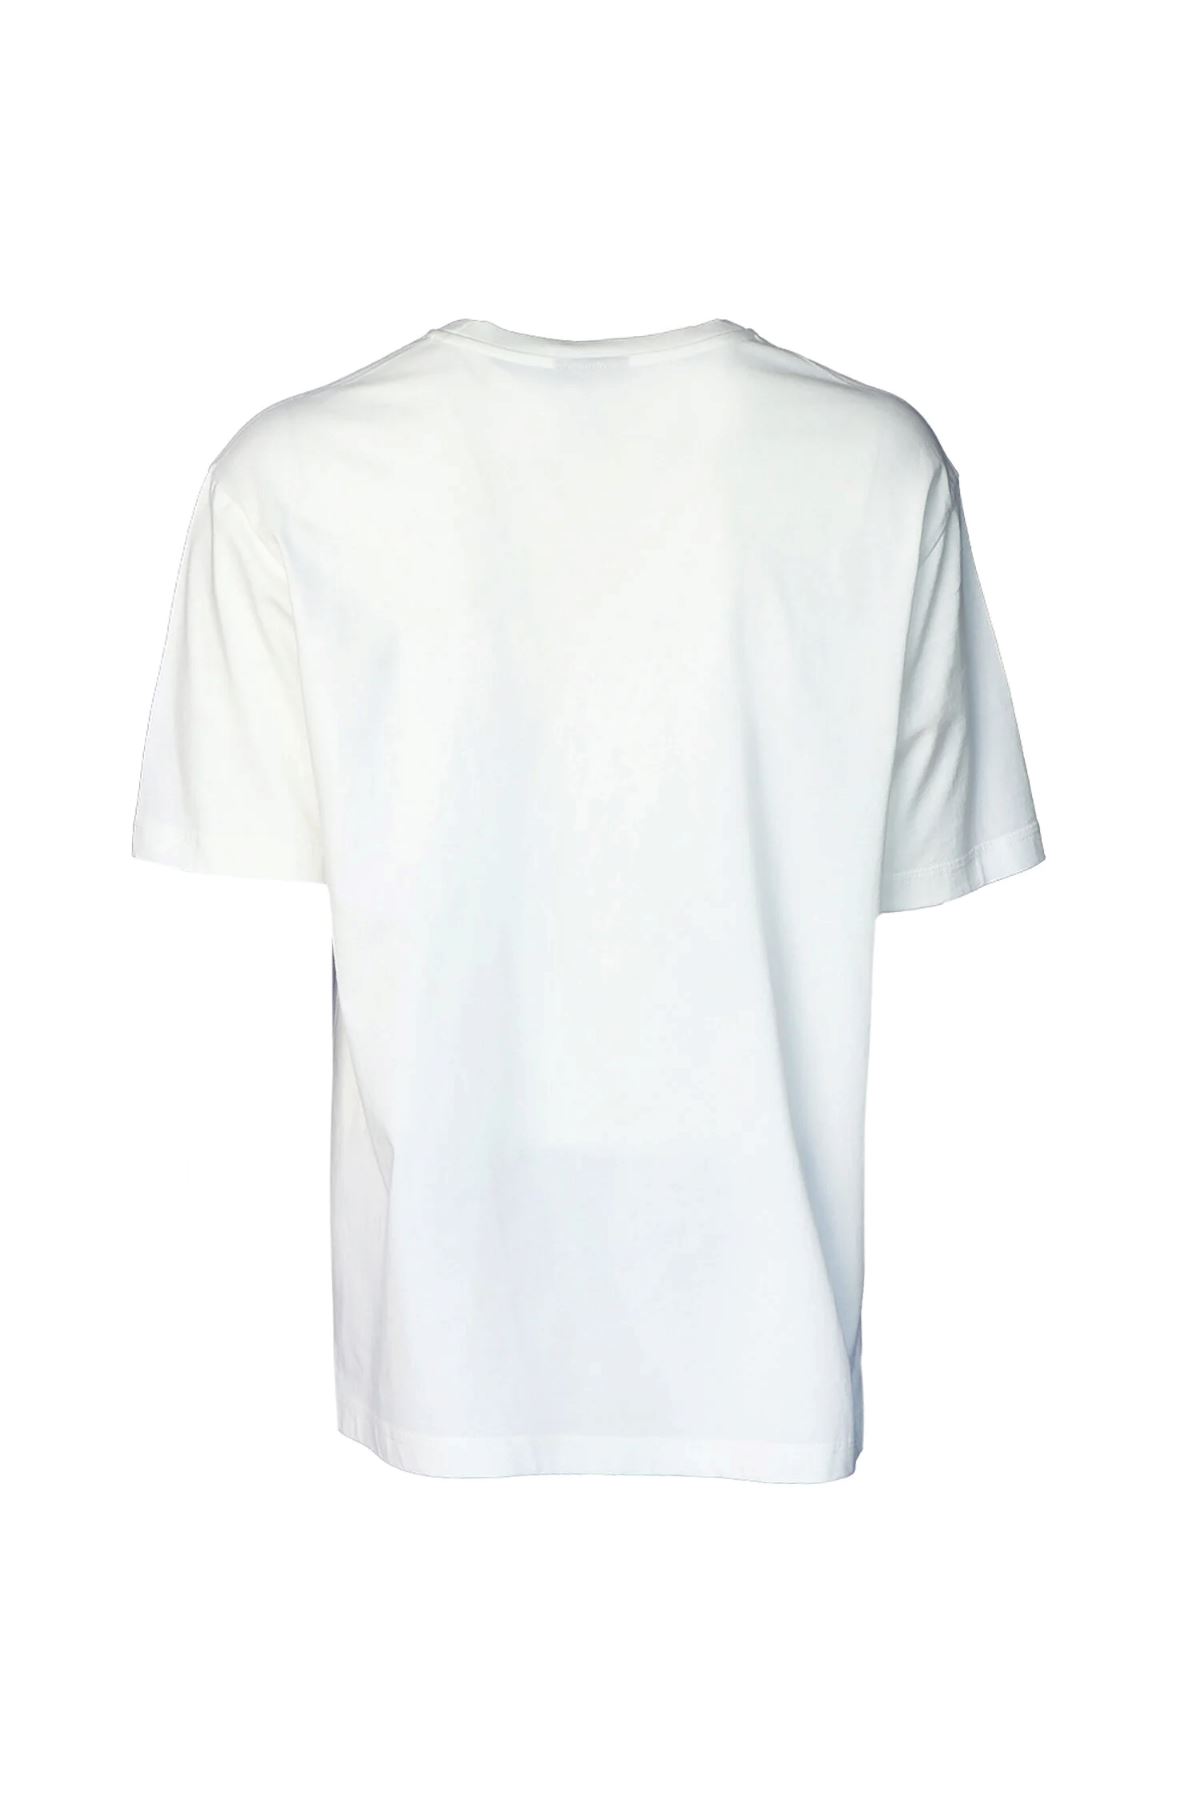 Hummel Hmlbaran Oversıze  T-Shırt S/S Erkek Beyaz Tişört - 911637-9003